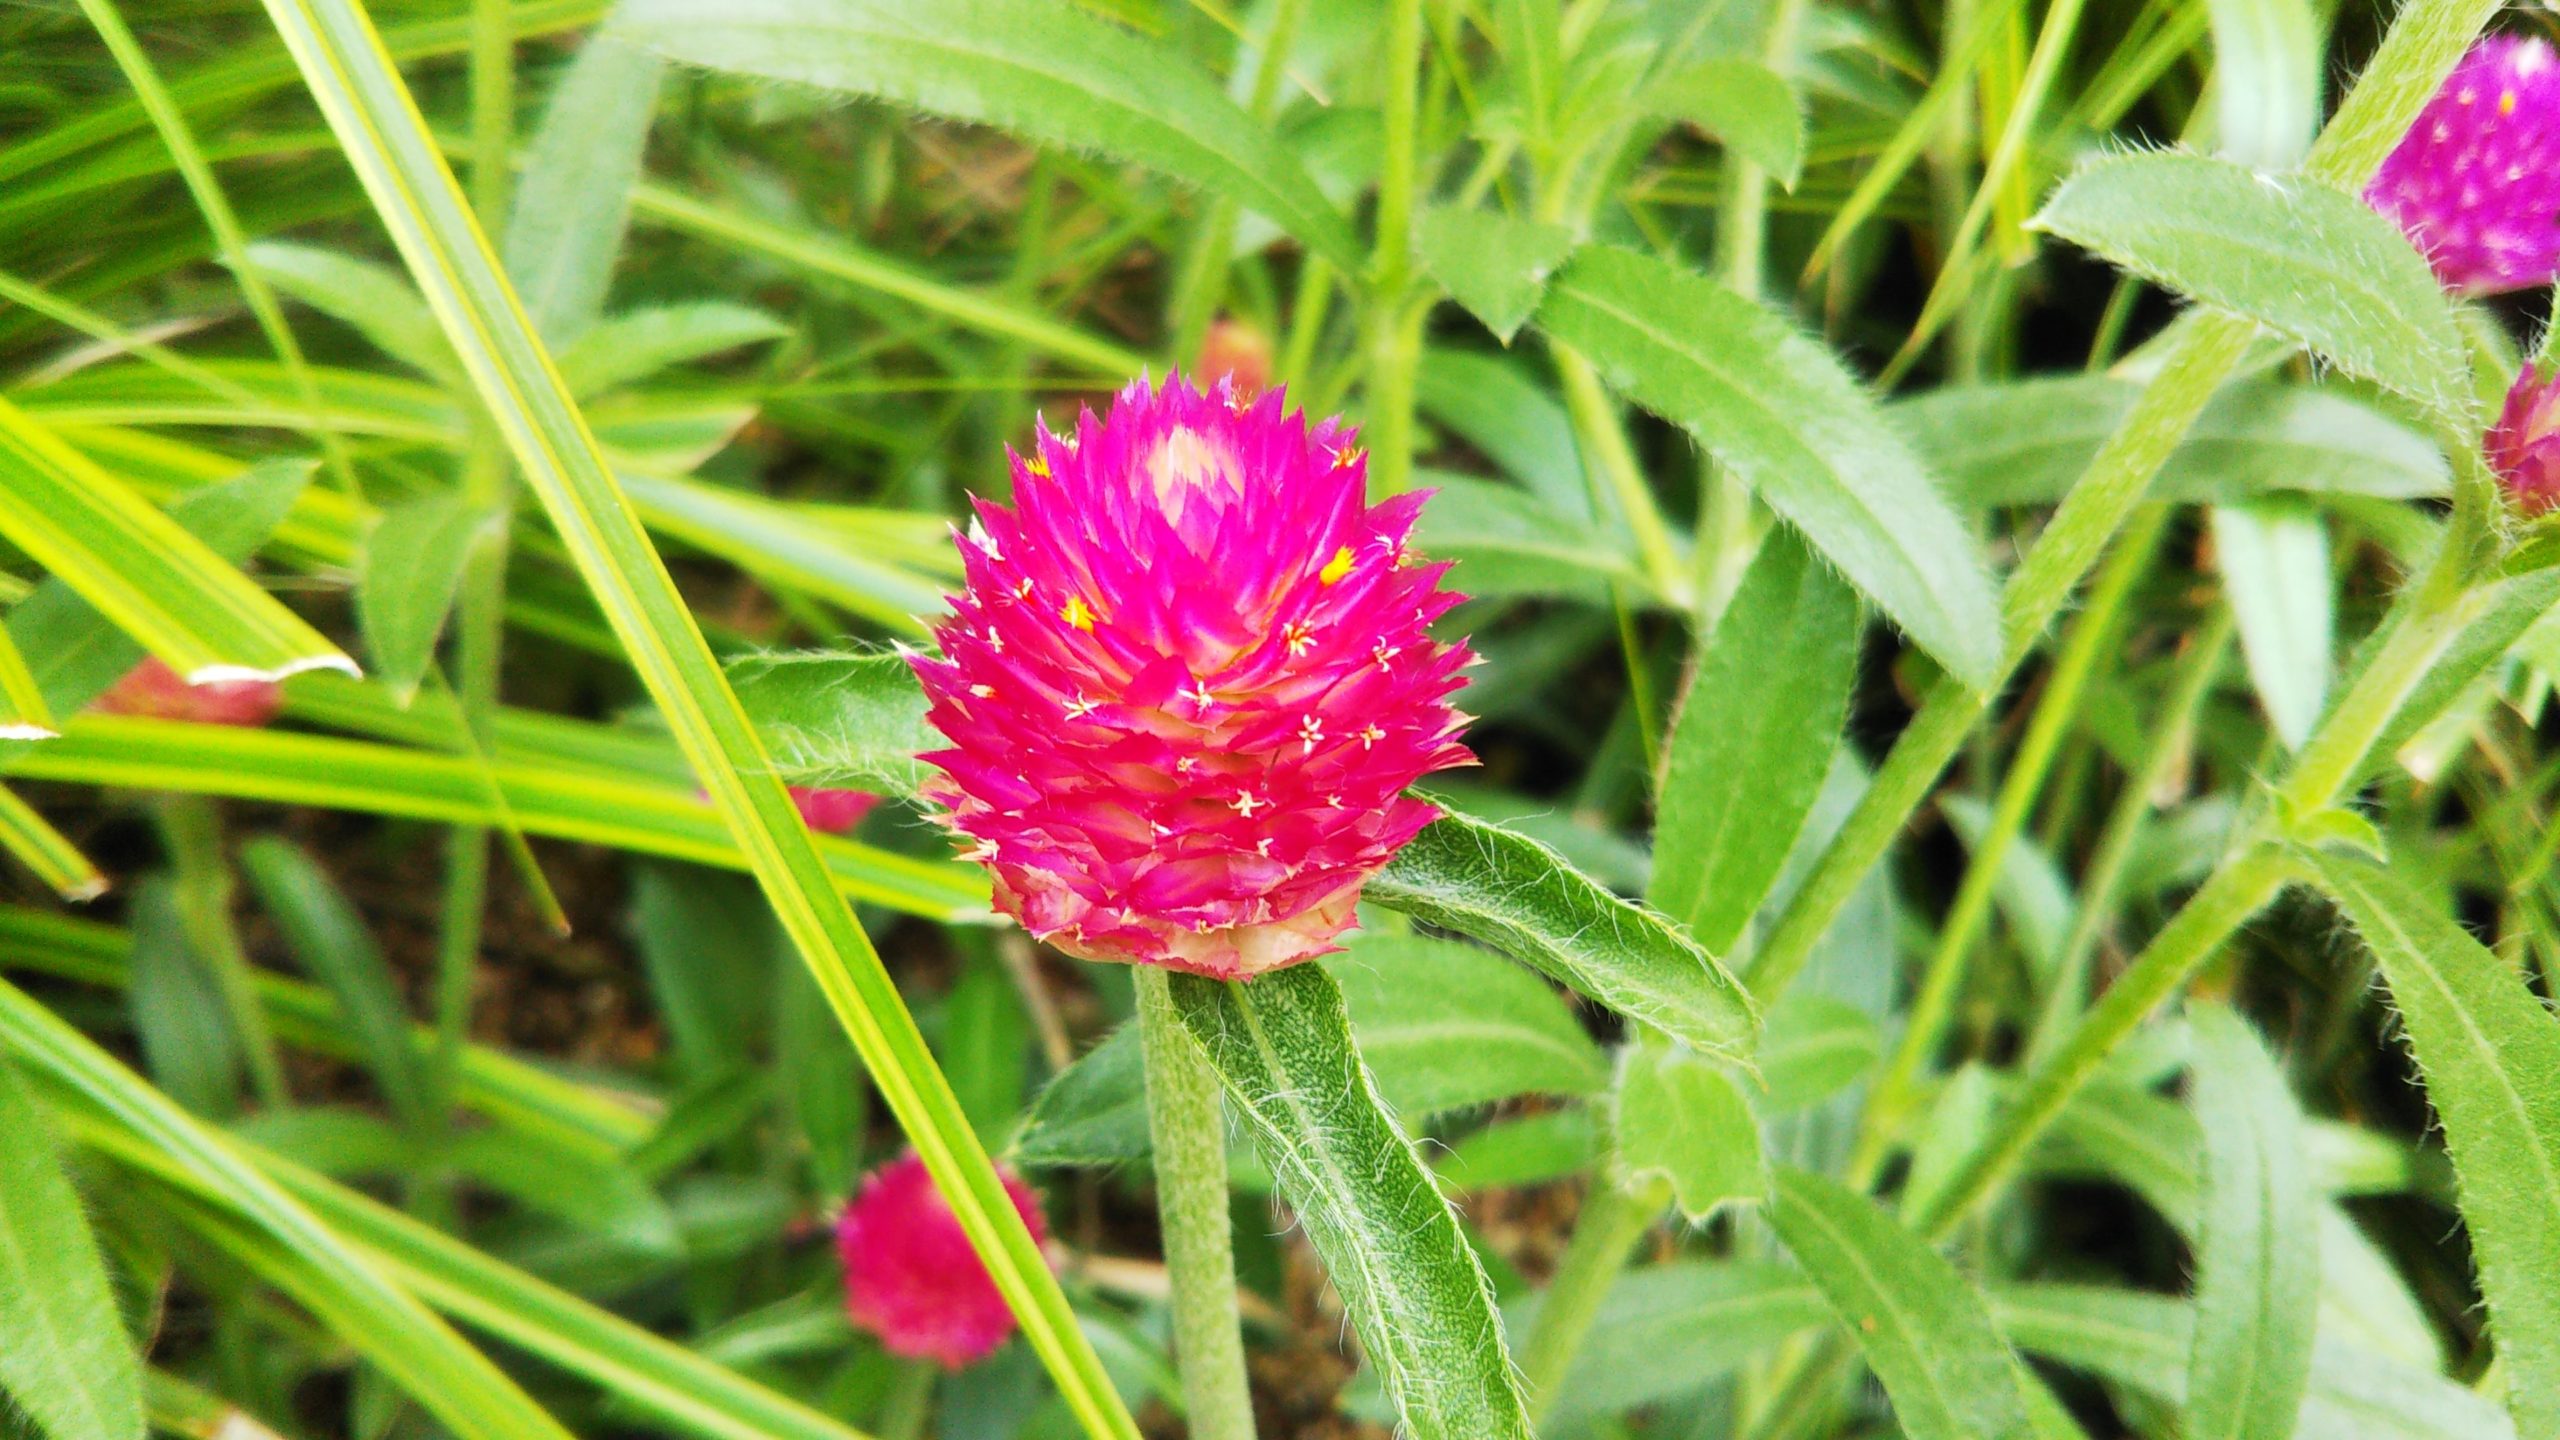 【センニチコウ】赤い苞のスキマから小さな花を咲かせる